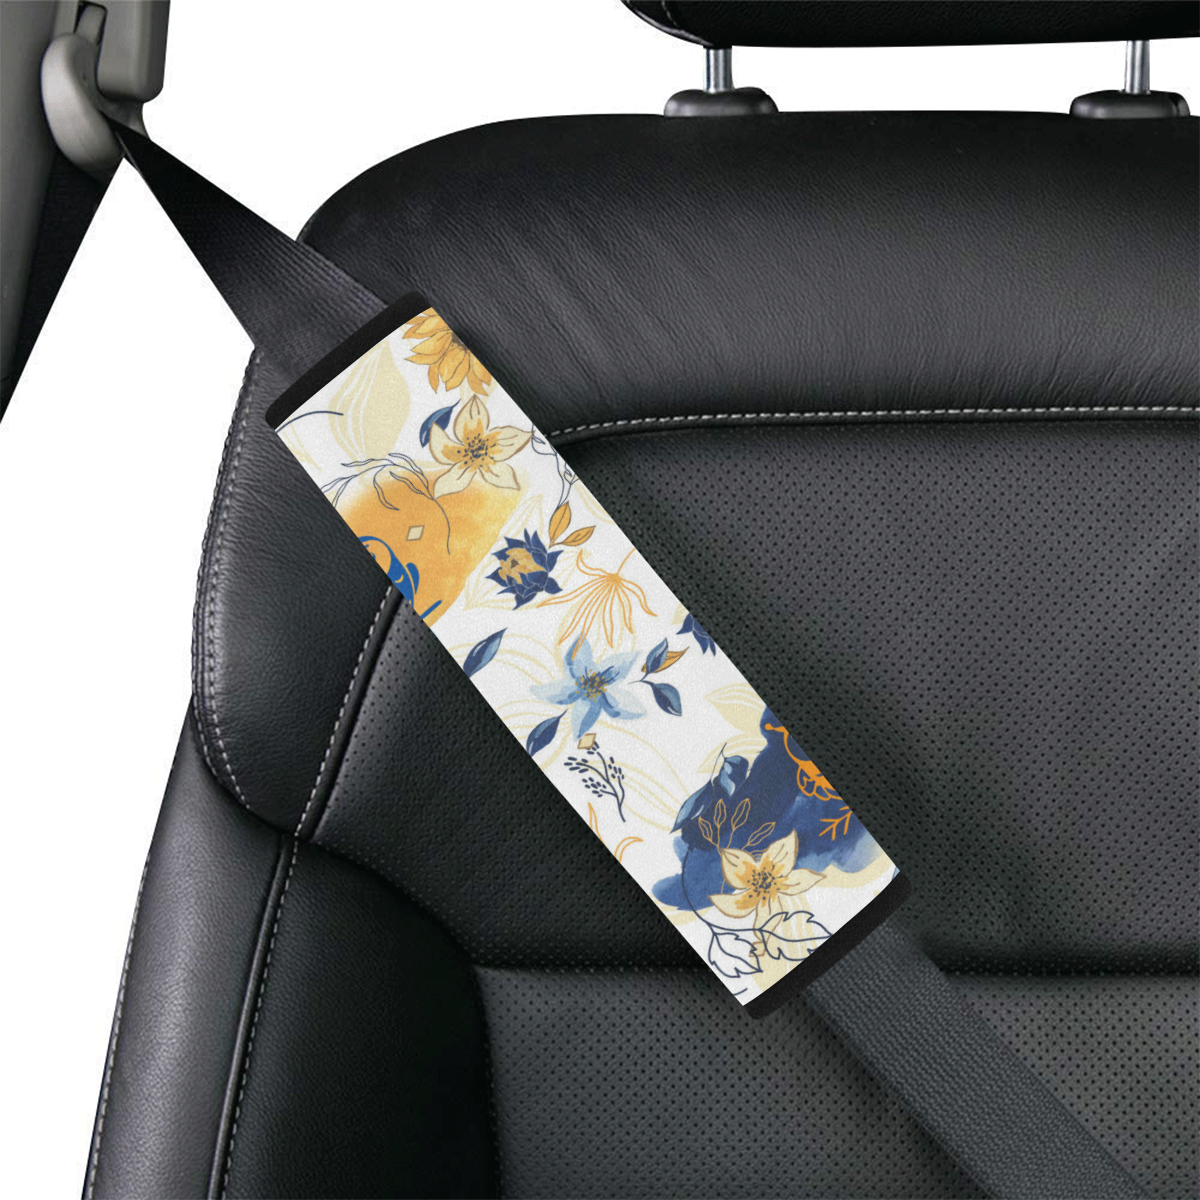 Anne Car Seat Belt Cover 7''x10''